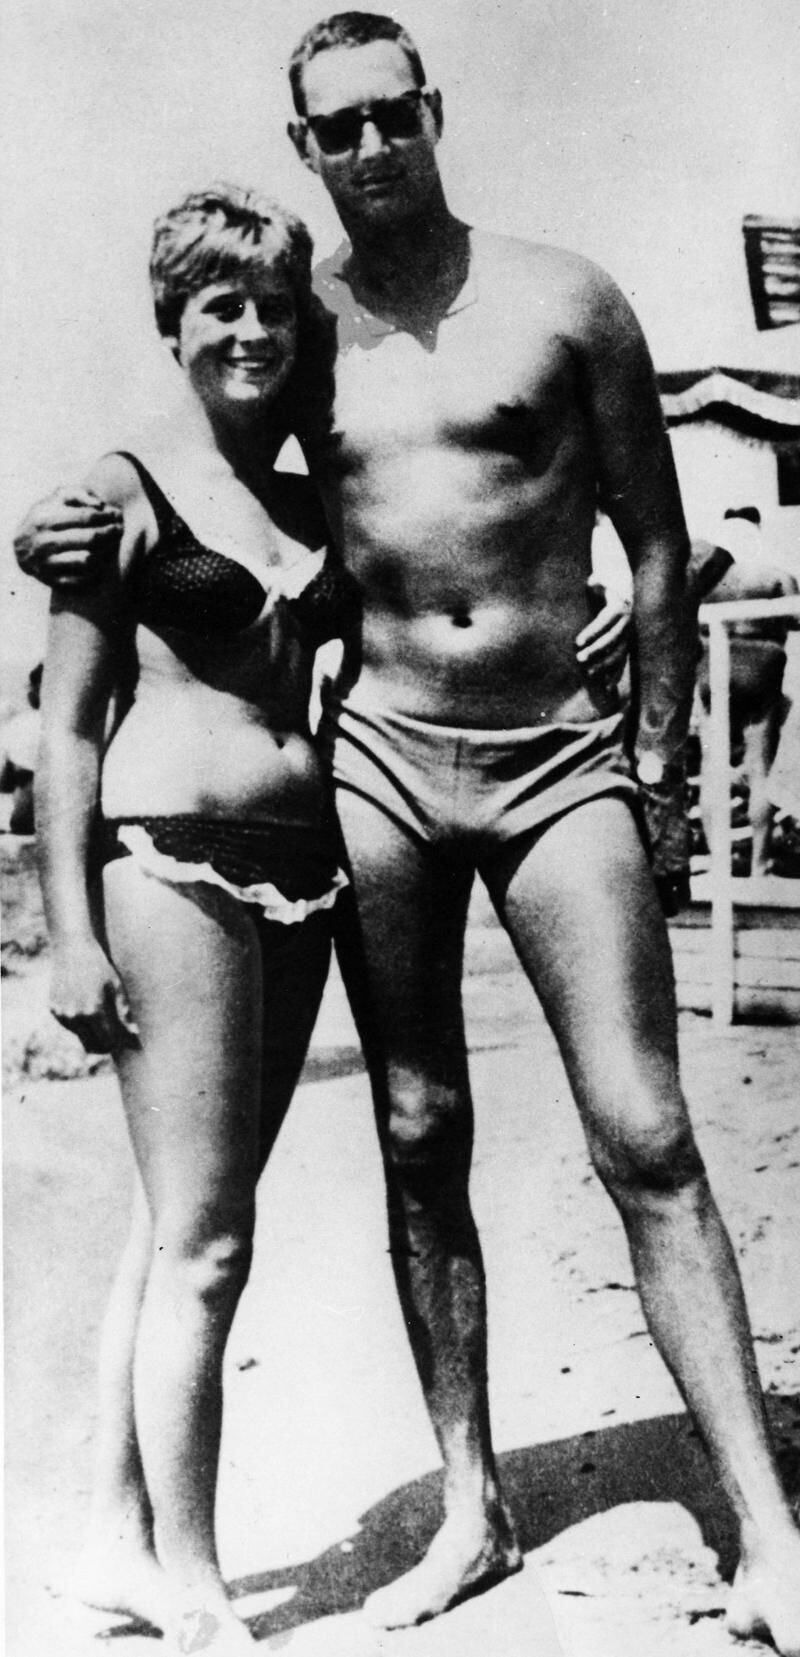 El padre y la madre de Nick en la playa, alrededor de 1965.